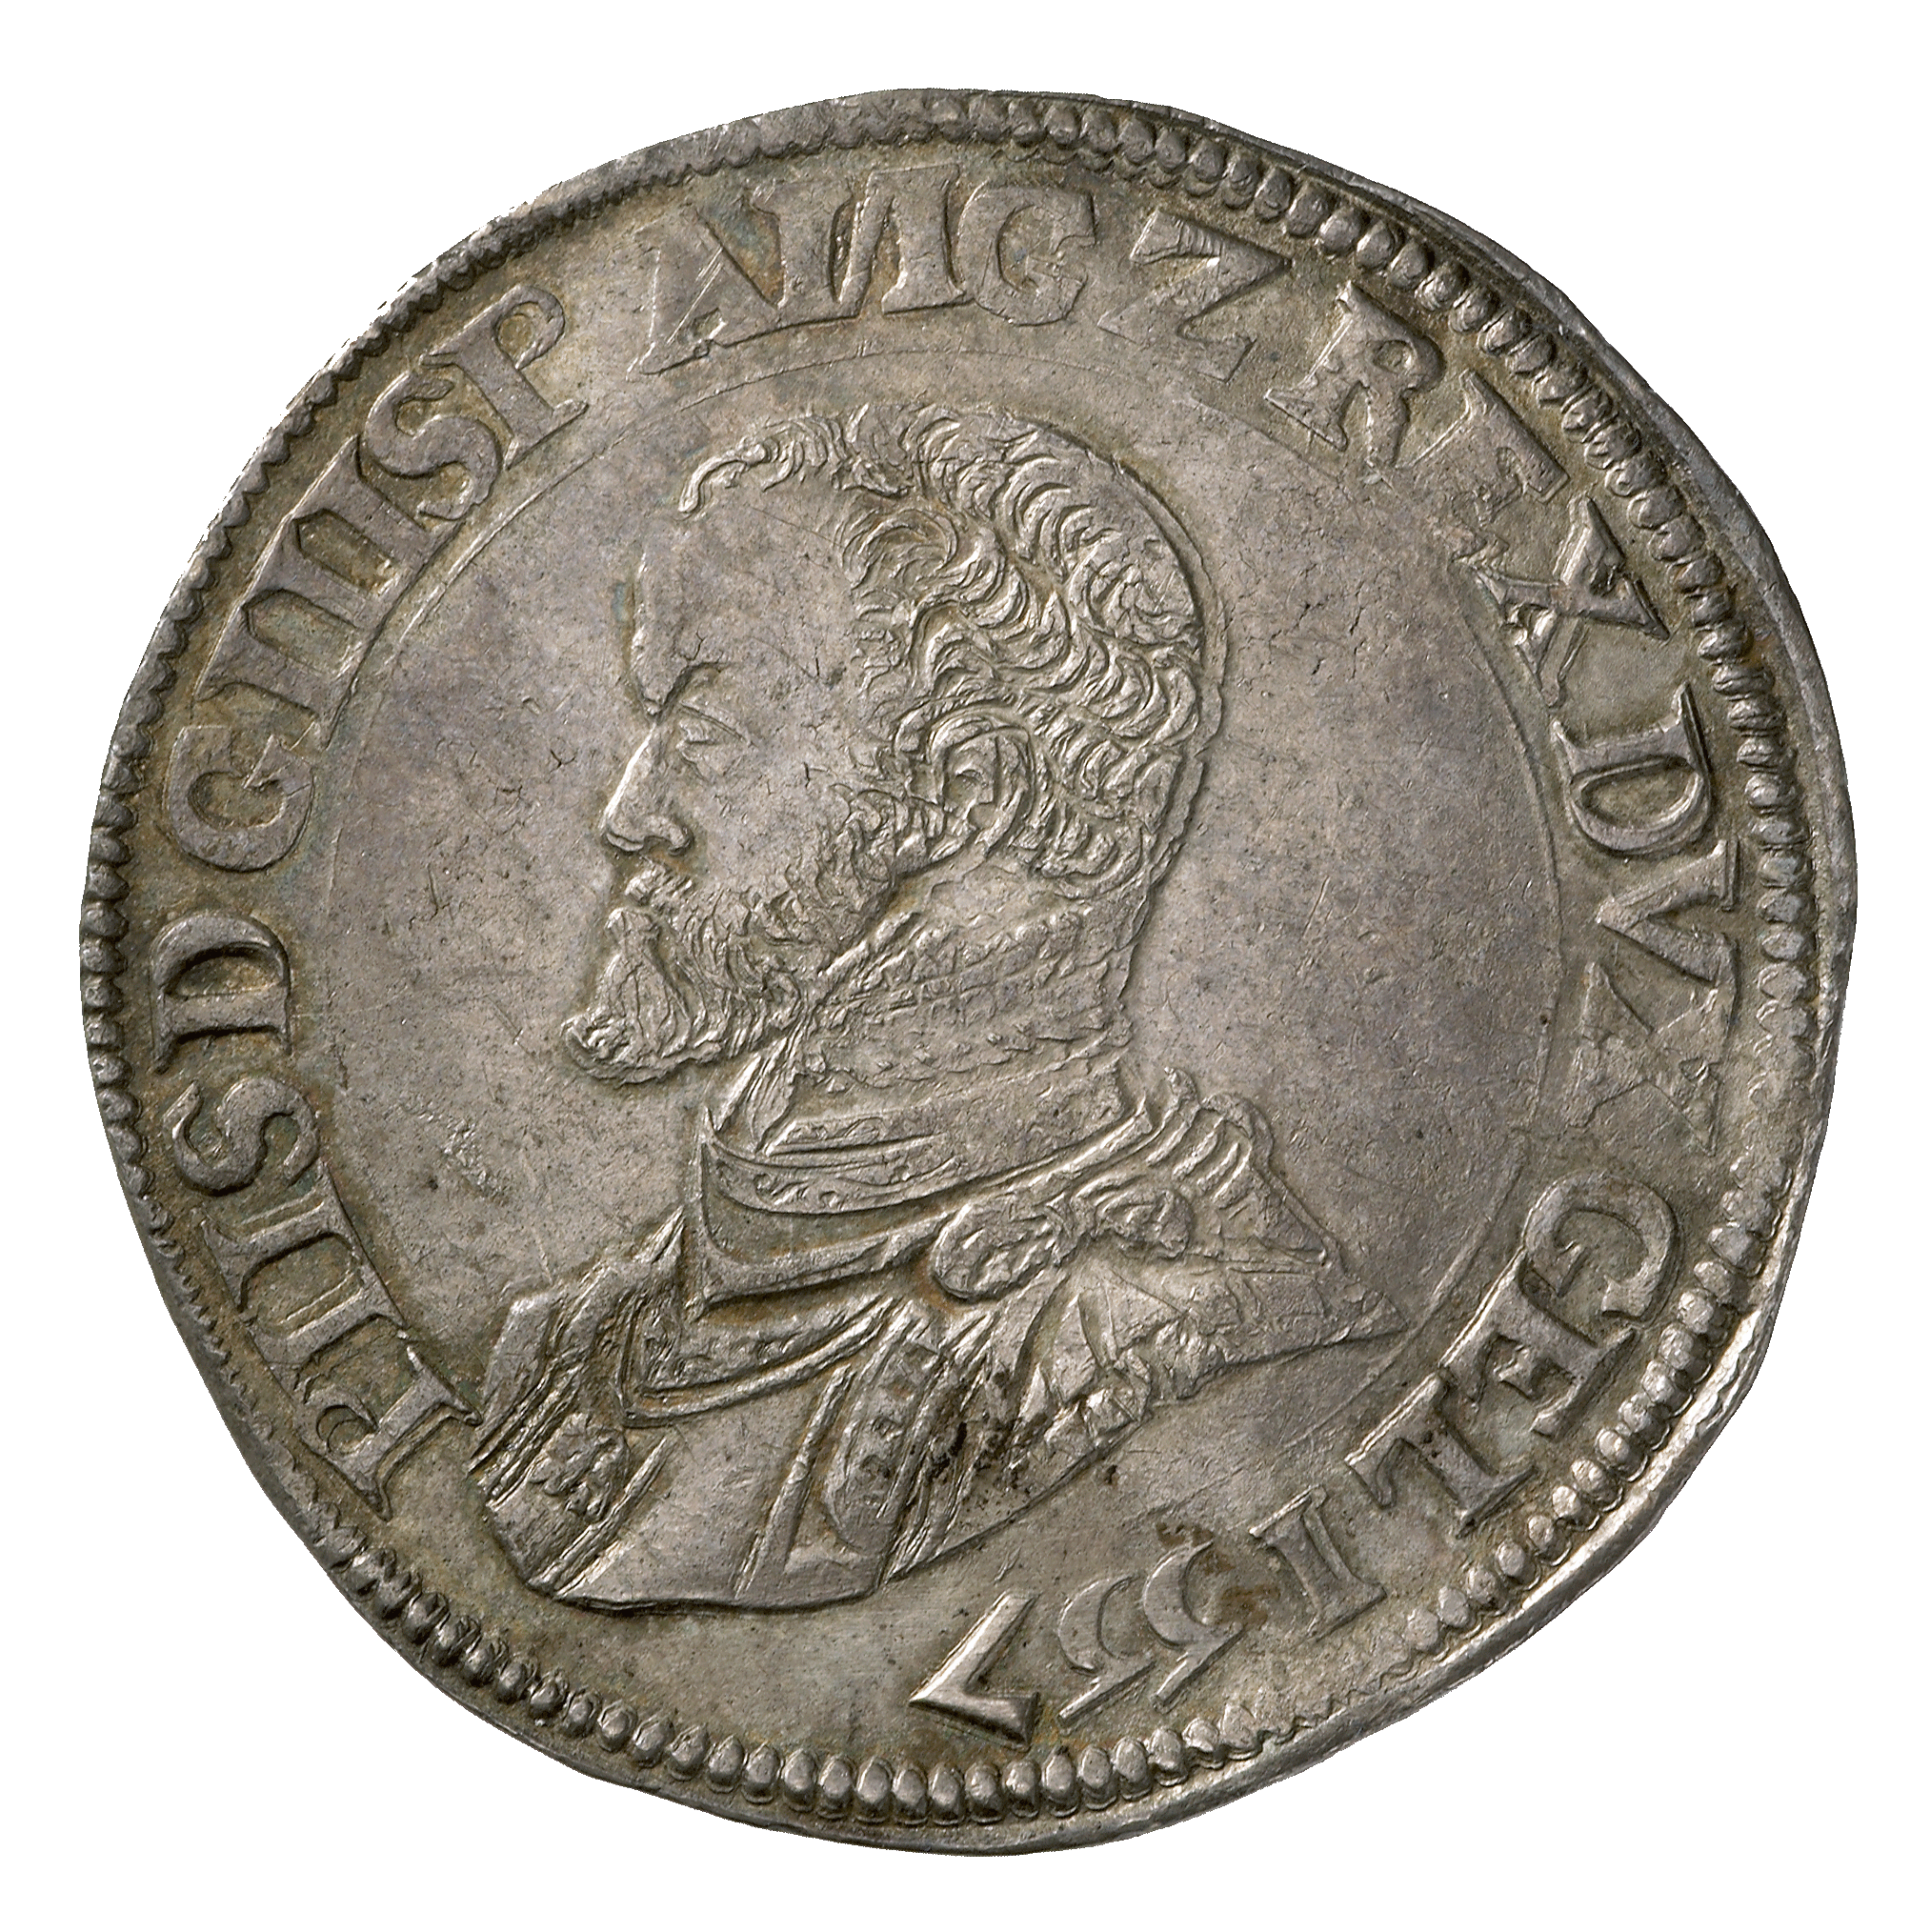 Heiliges Römisches Reich, Herzogtum Gelderland, Philipp II. von Spanien, Philippstaler (obverse)